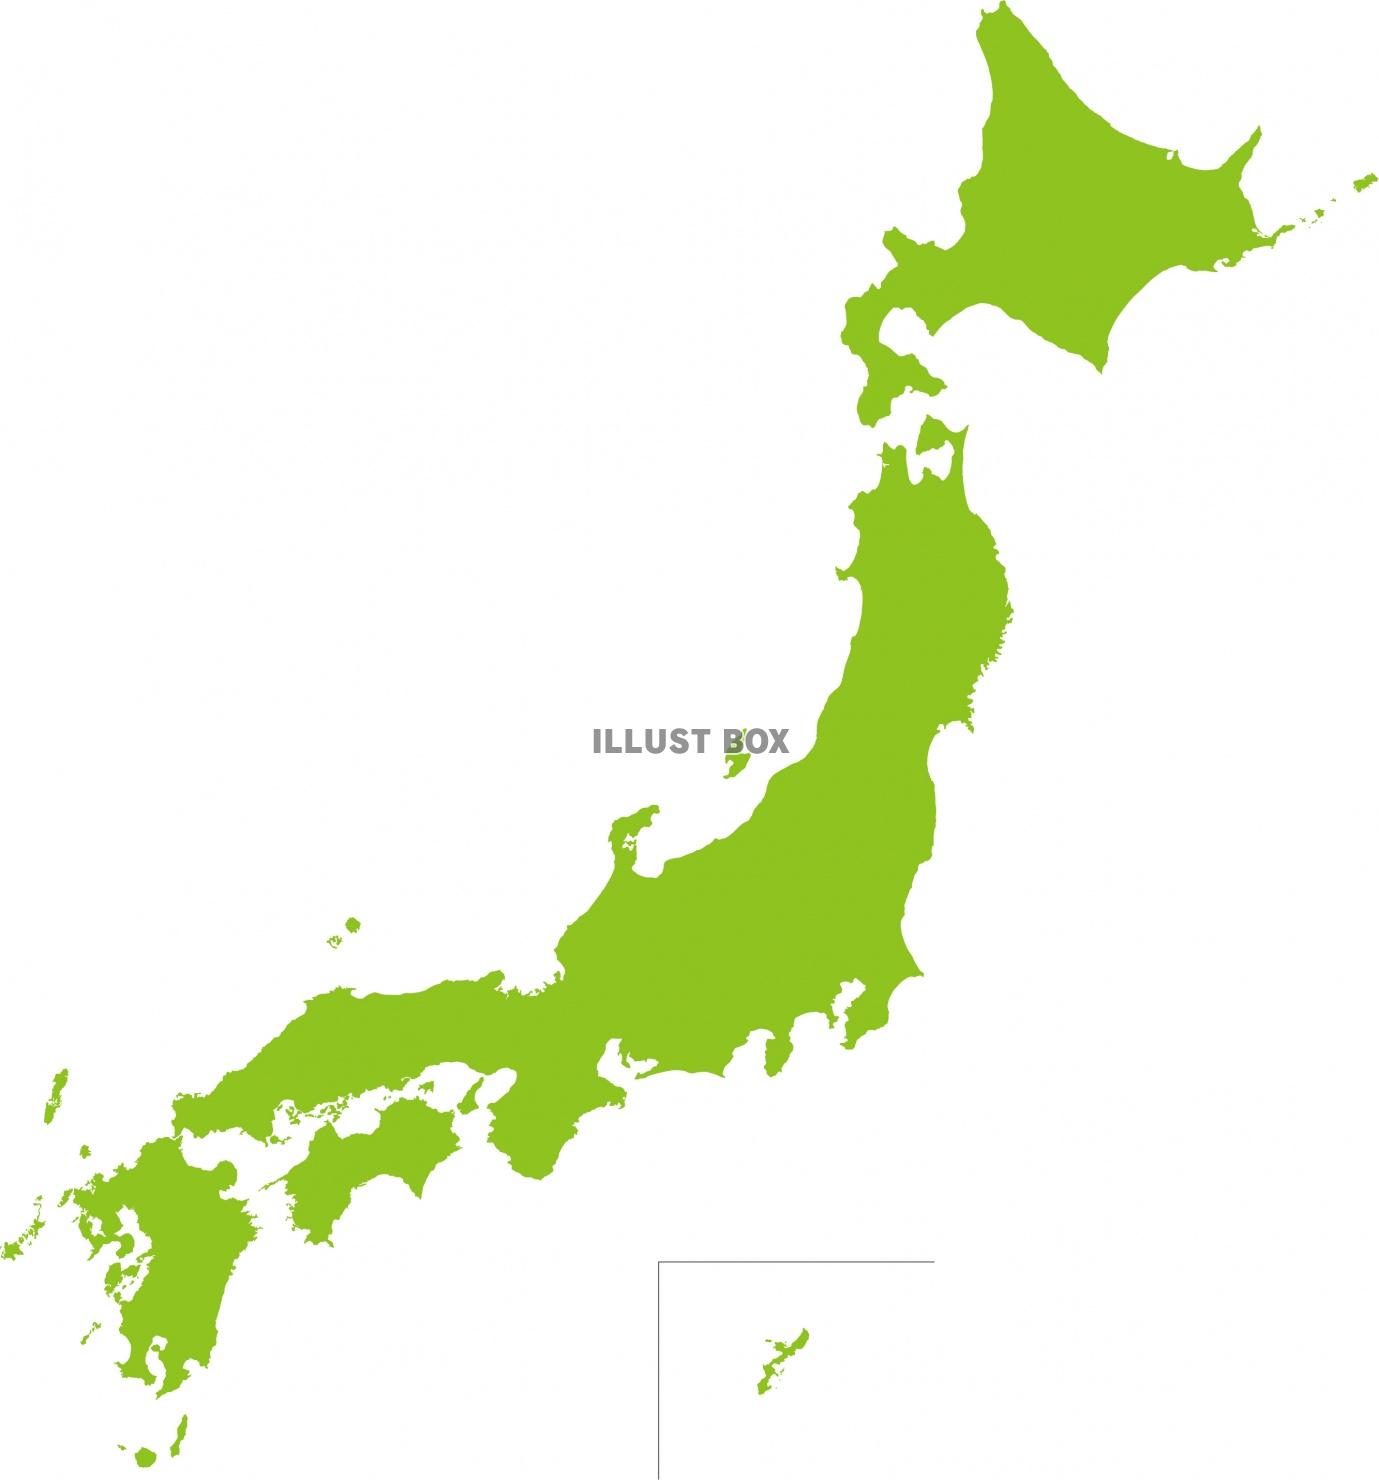 日本地図 - 地図/旅行ガイド